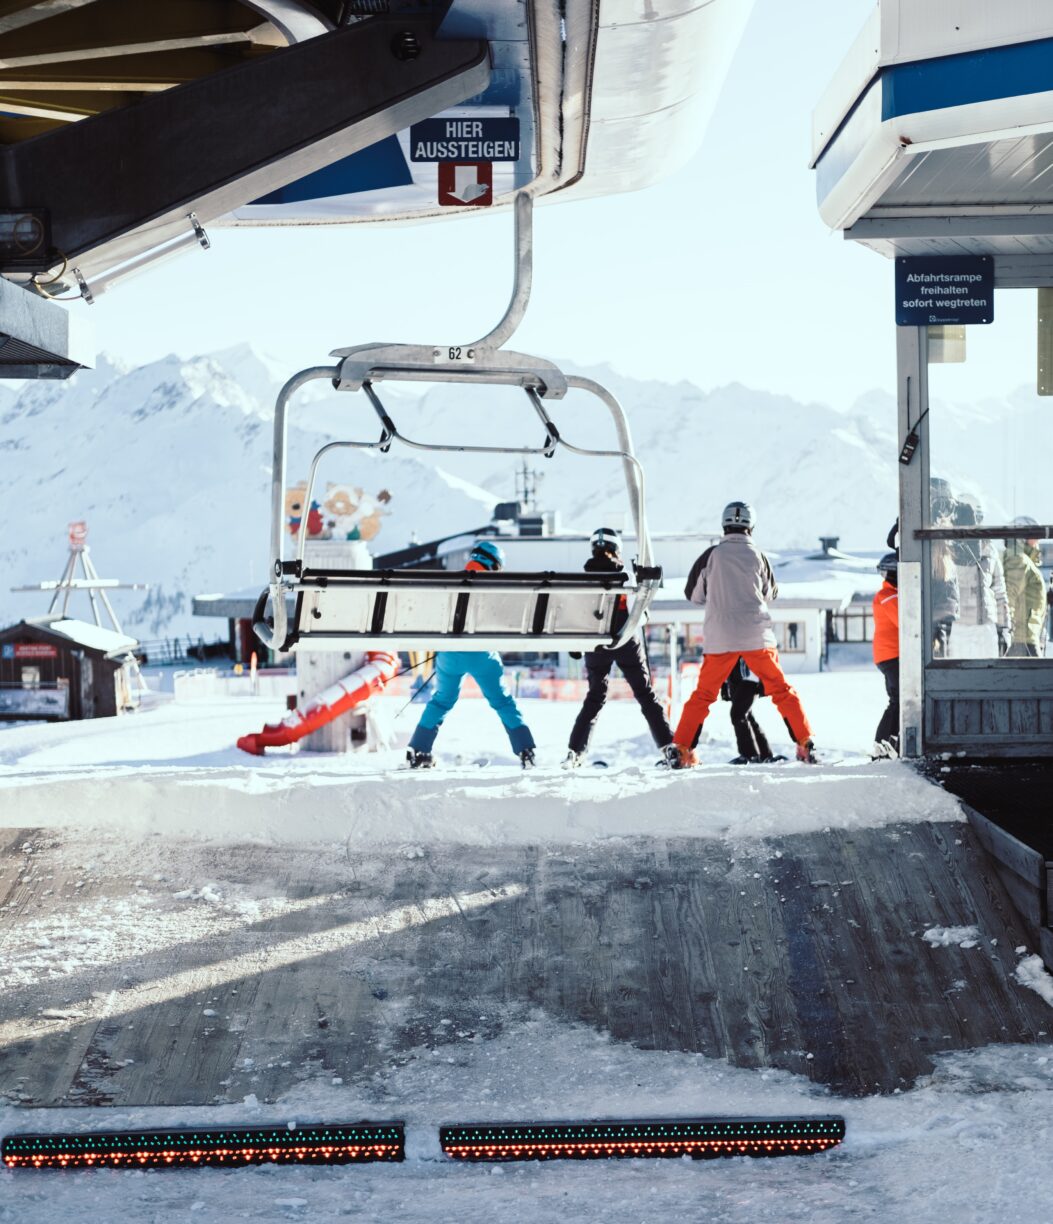 Voorkom onvoorziene kosten op je wintersportvakantie in 2021/2022. Skilift